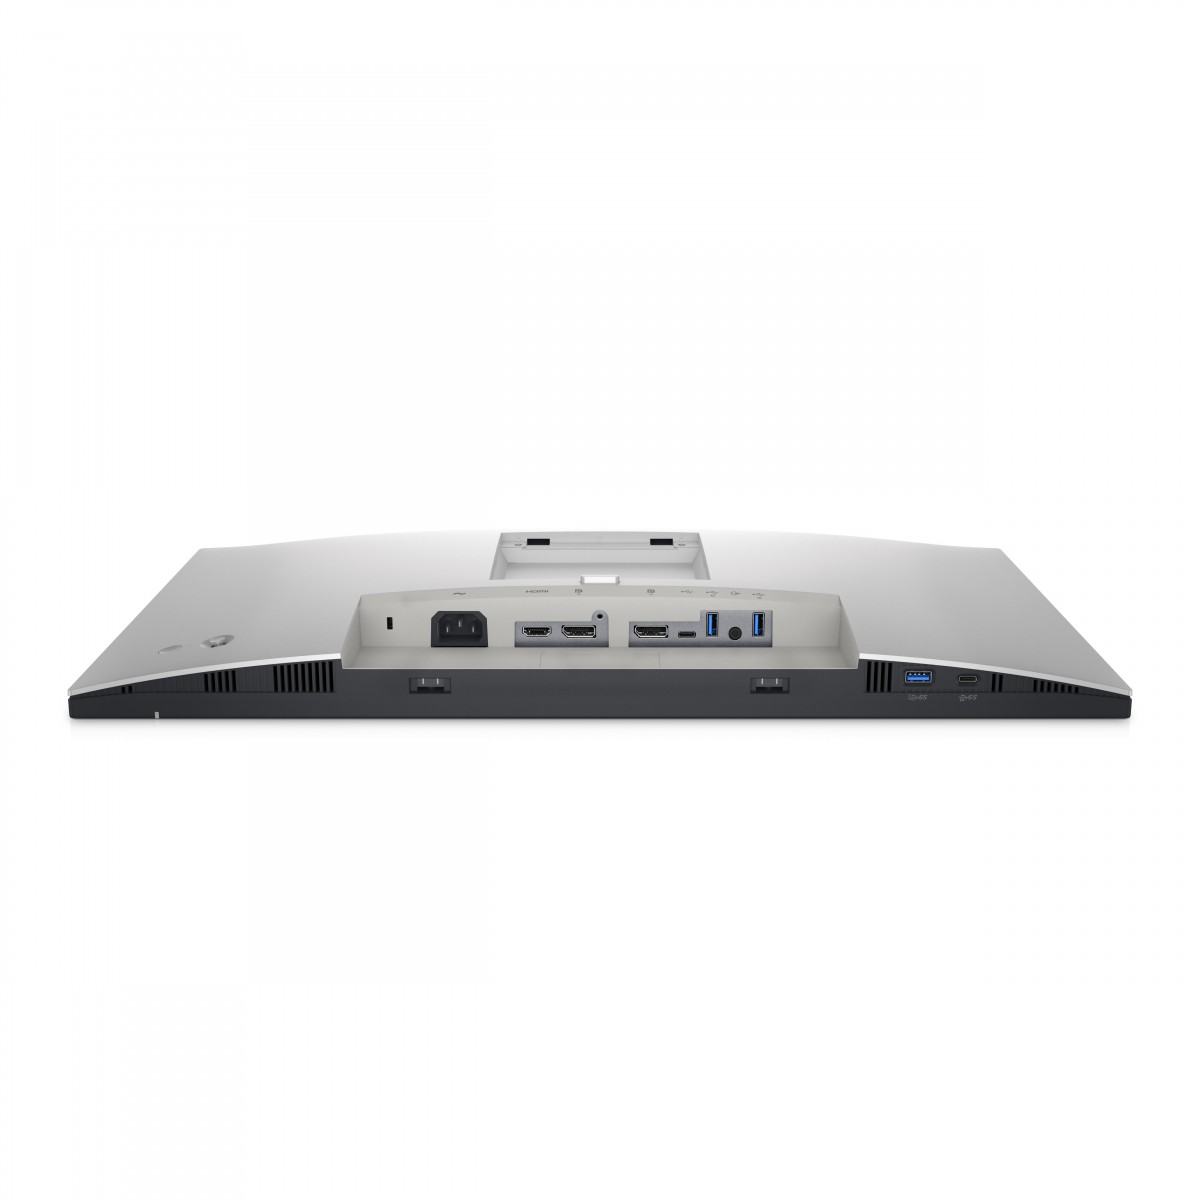 Dell UltraSharp U2422H_WOST - 61 cm (24) - 1920 x 1080 pixels - Full HD - LCD - 8 ms - Black - Silver